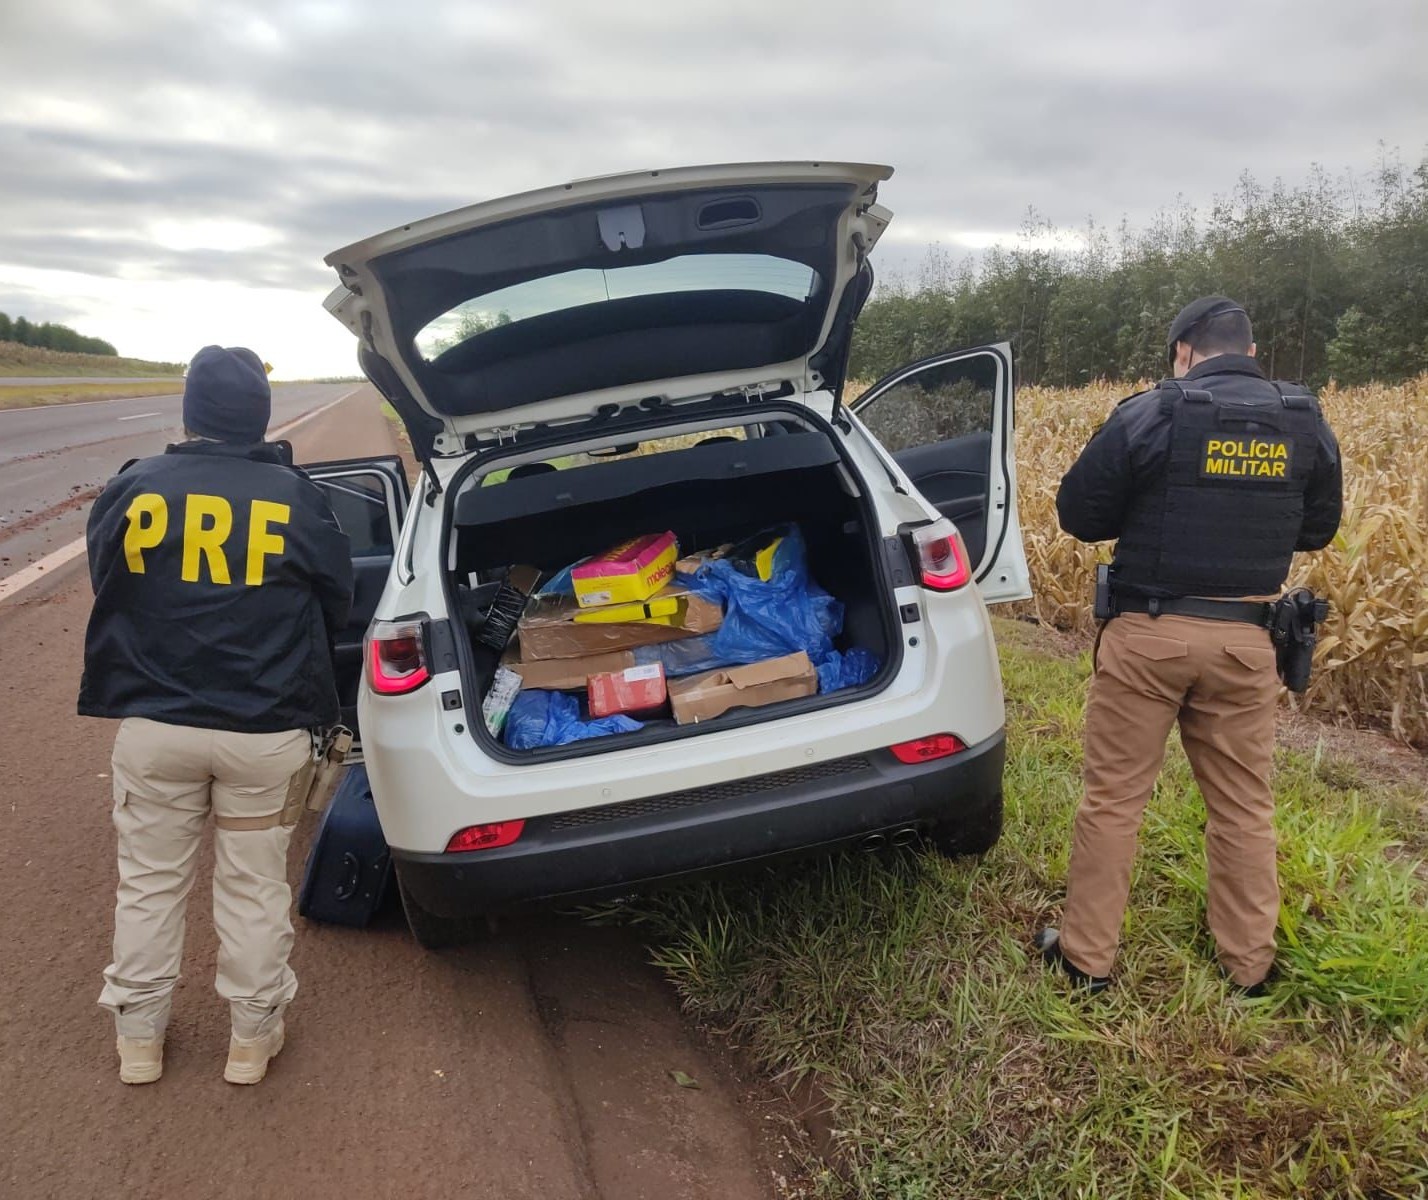 Polícia apreende veículo furtado com drogas e anabolizantes após perseguição